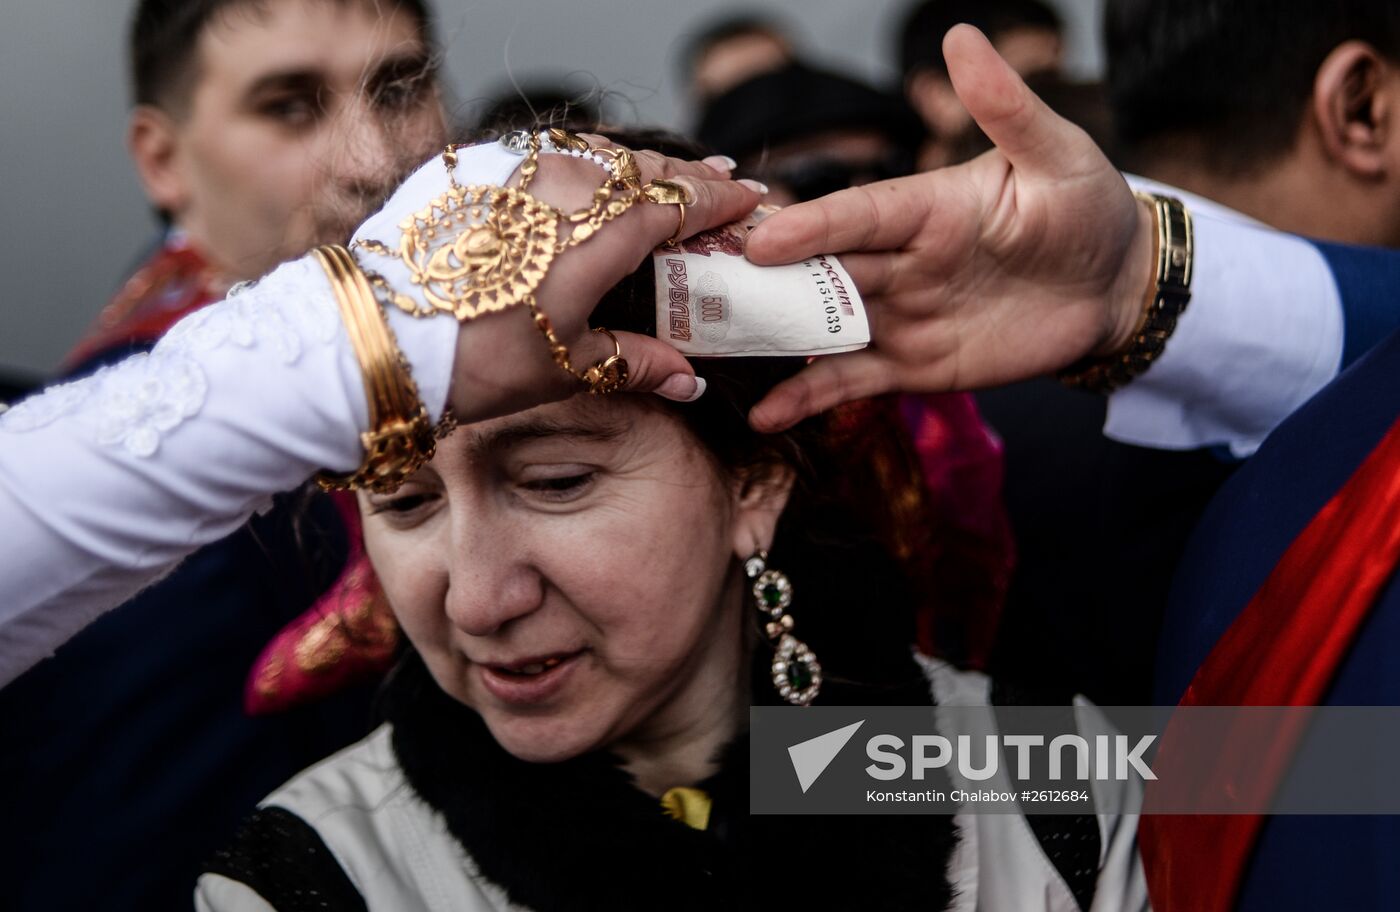 Gypsy wedding in Novgorod Region